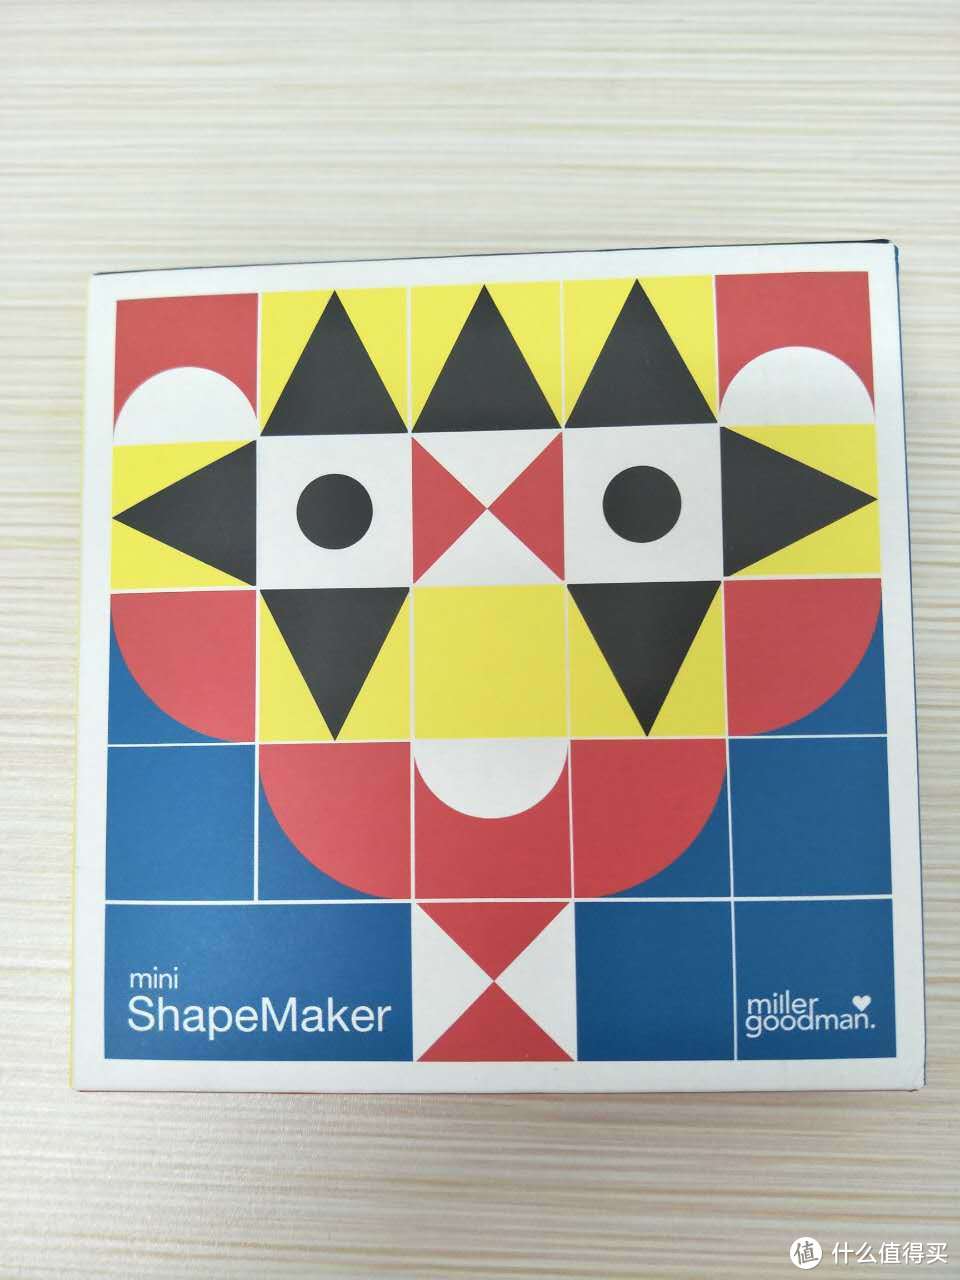 唤起儿时回忆的拼图积木—Miller Goodman ShapeMaker